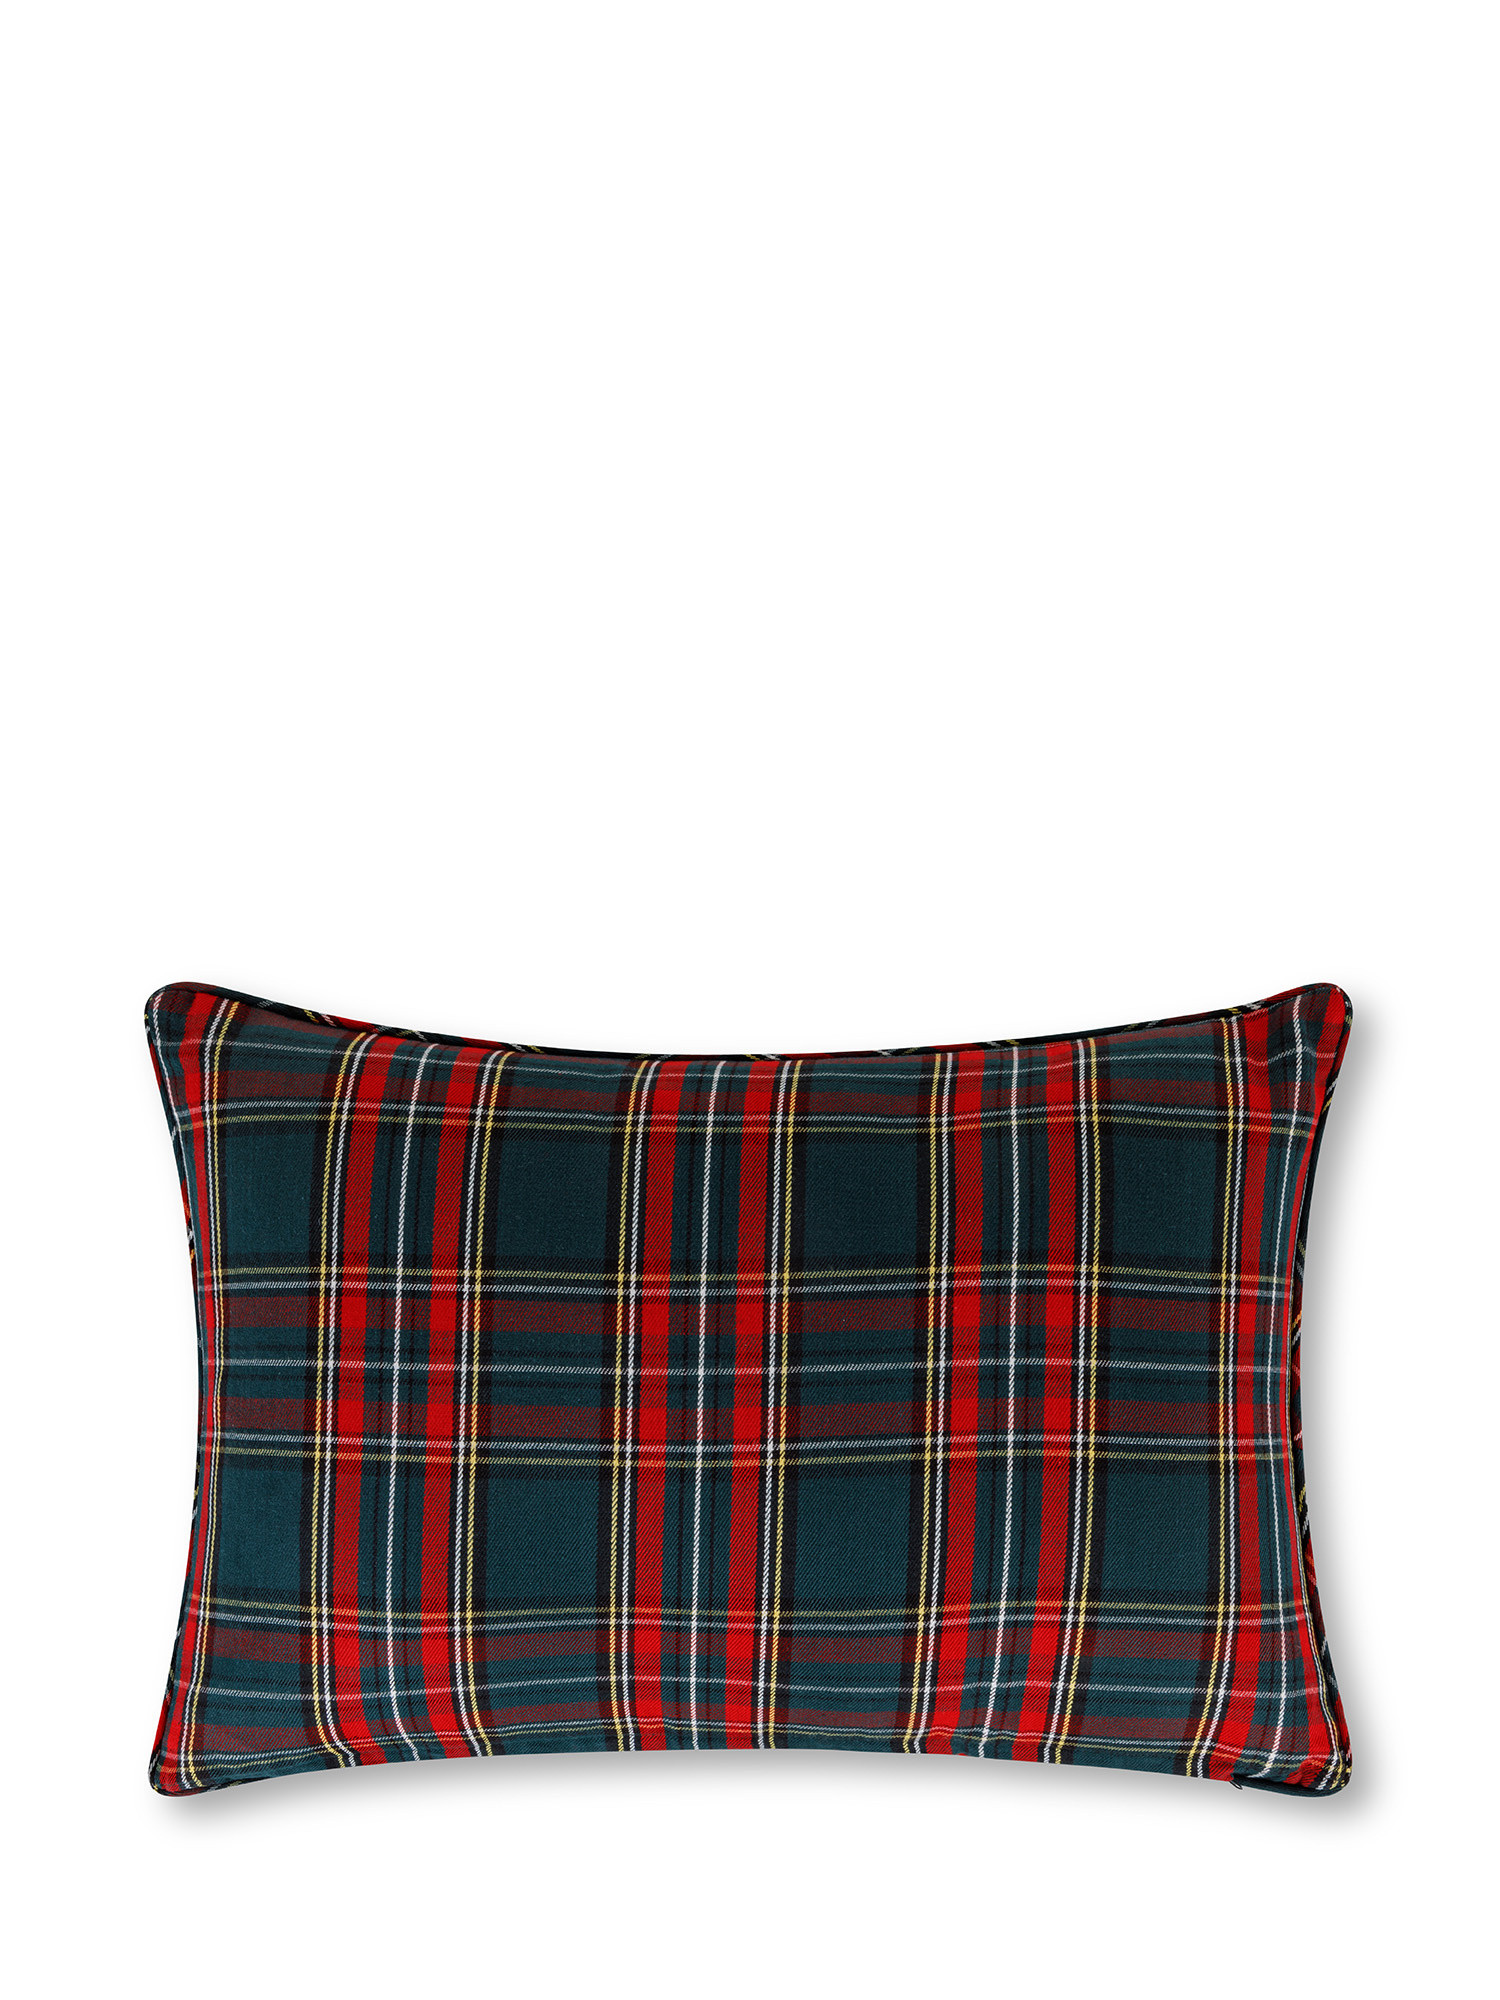 Tartan cushion 35x50 cm, Green, large image number 1